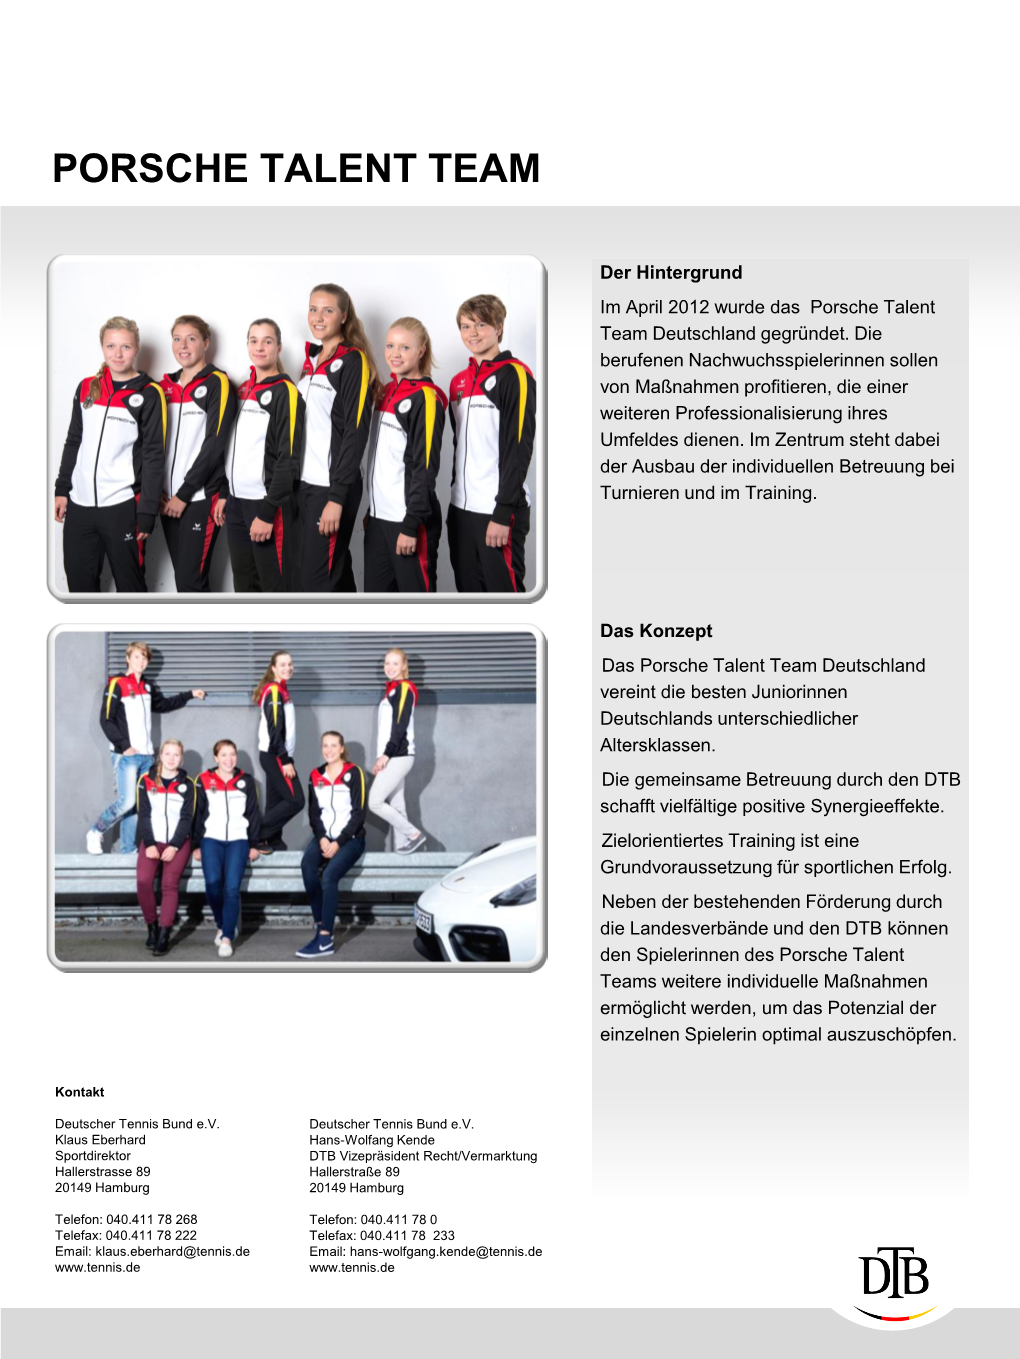 Porsche Talent Team